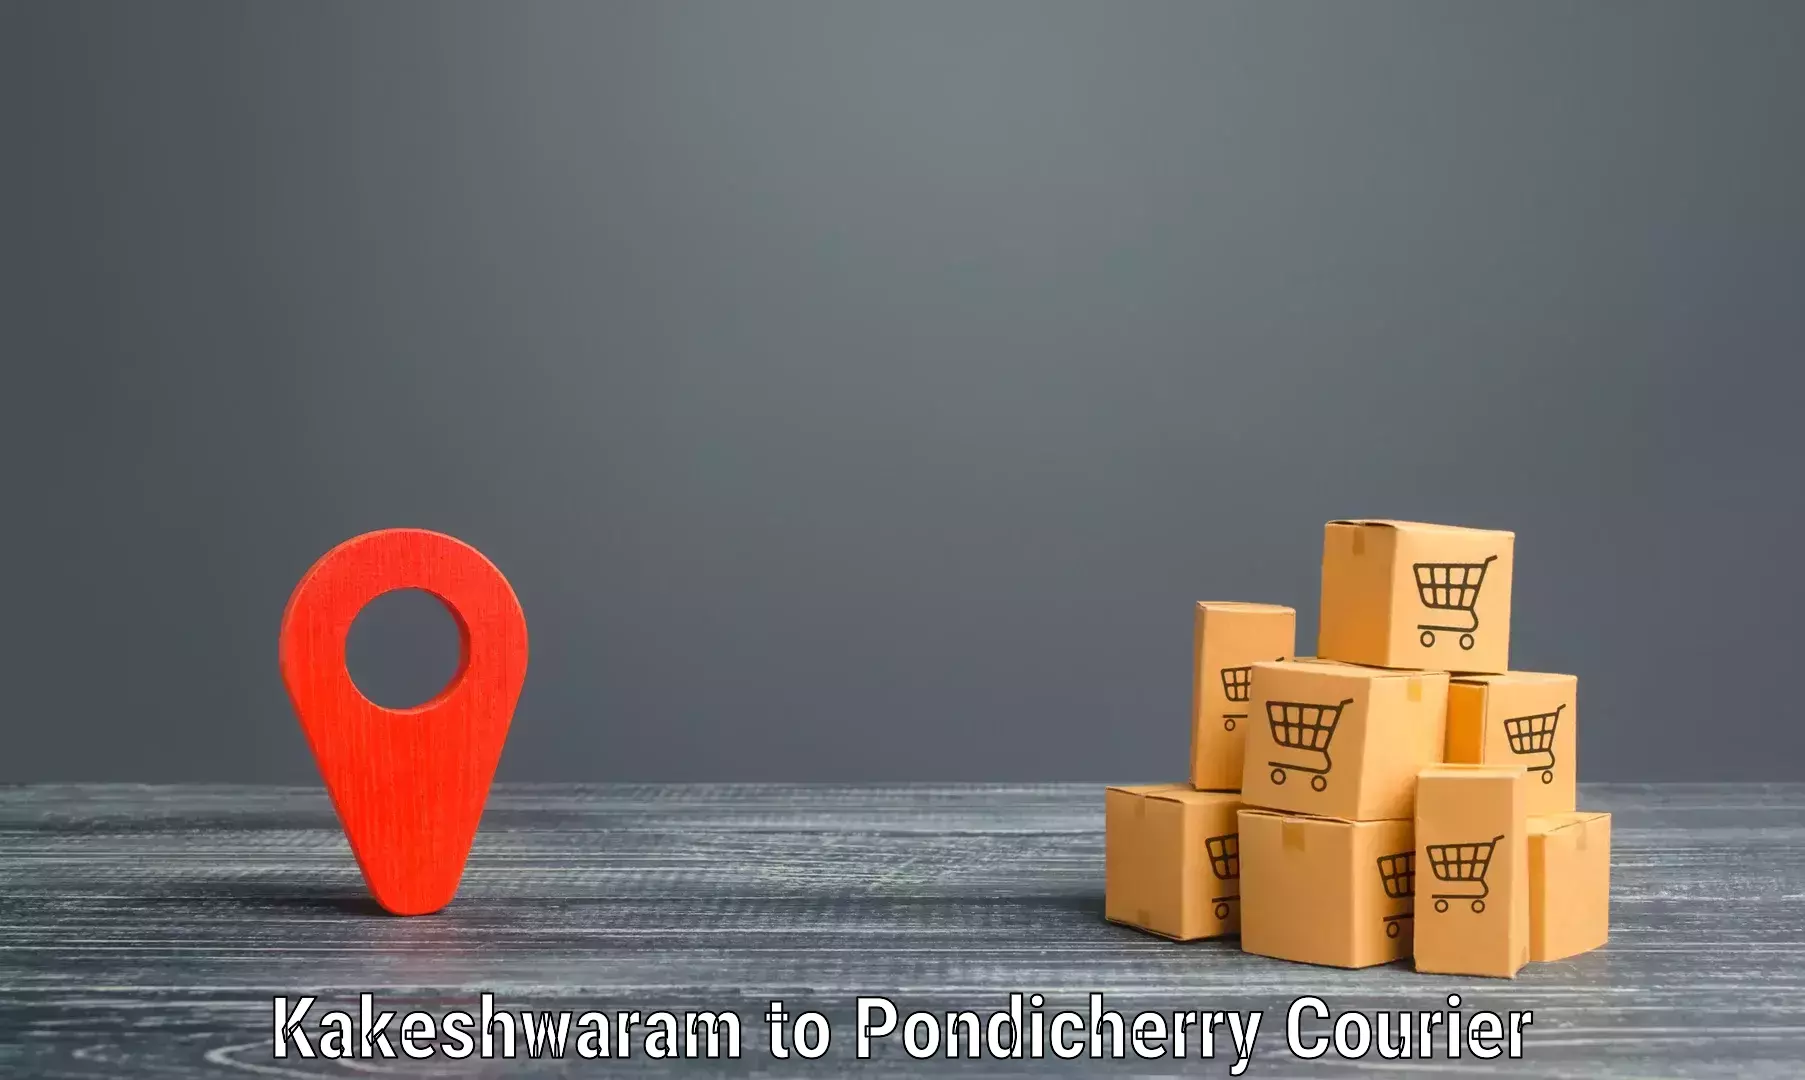 Logistics service provider Kakeshwaram to Pondicherry University